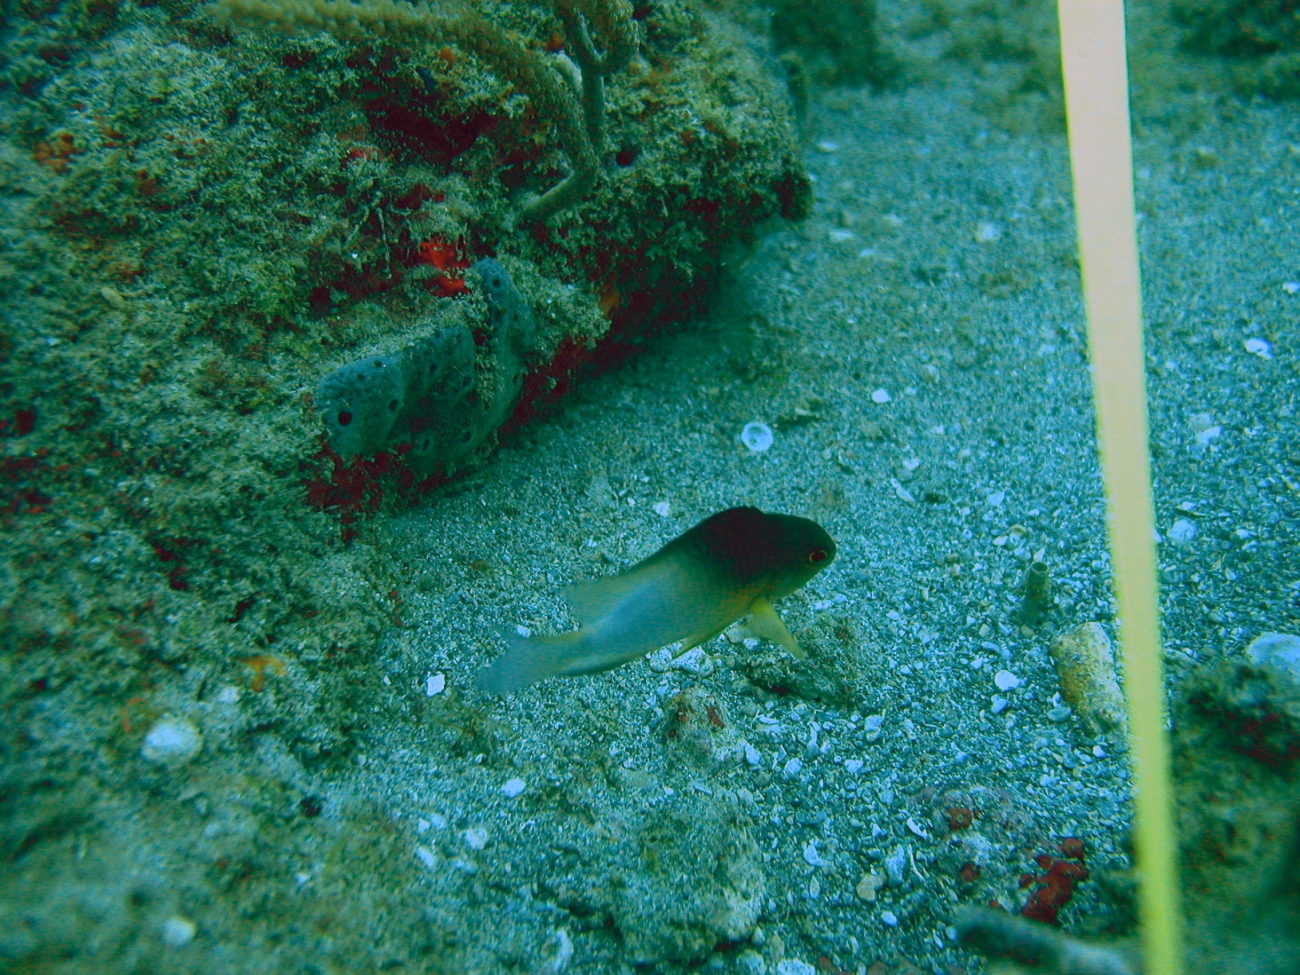 Bicolor damselfish (Stegastes partitus)